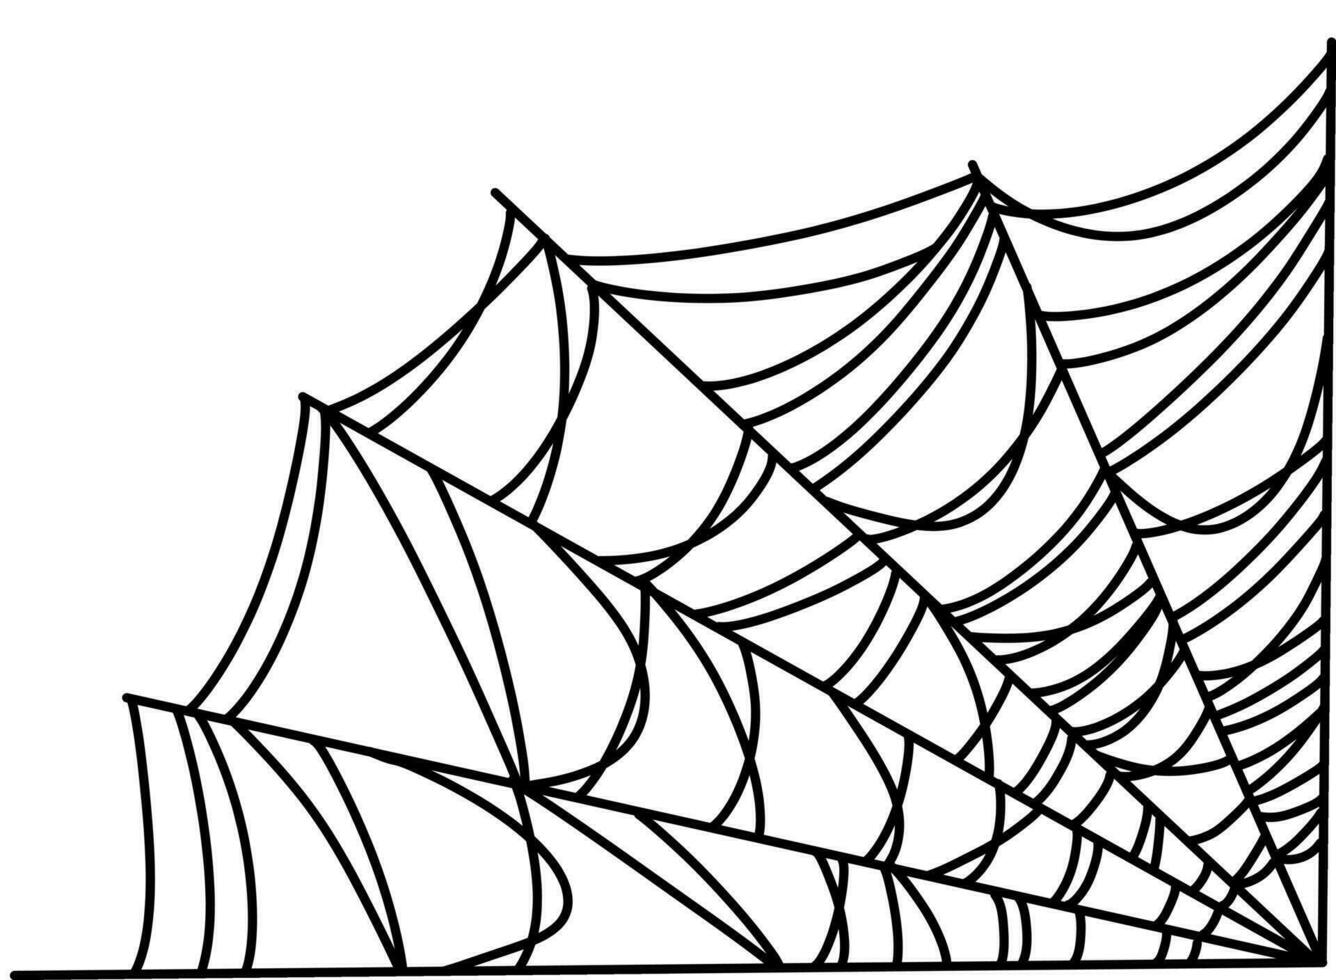 Spinnennetz im Gekritzel Stil vektor